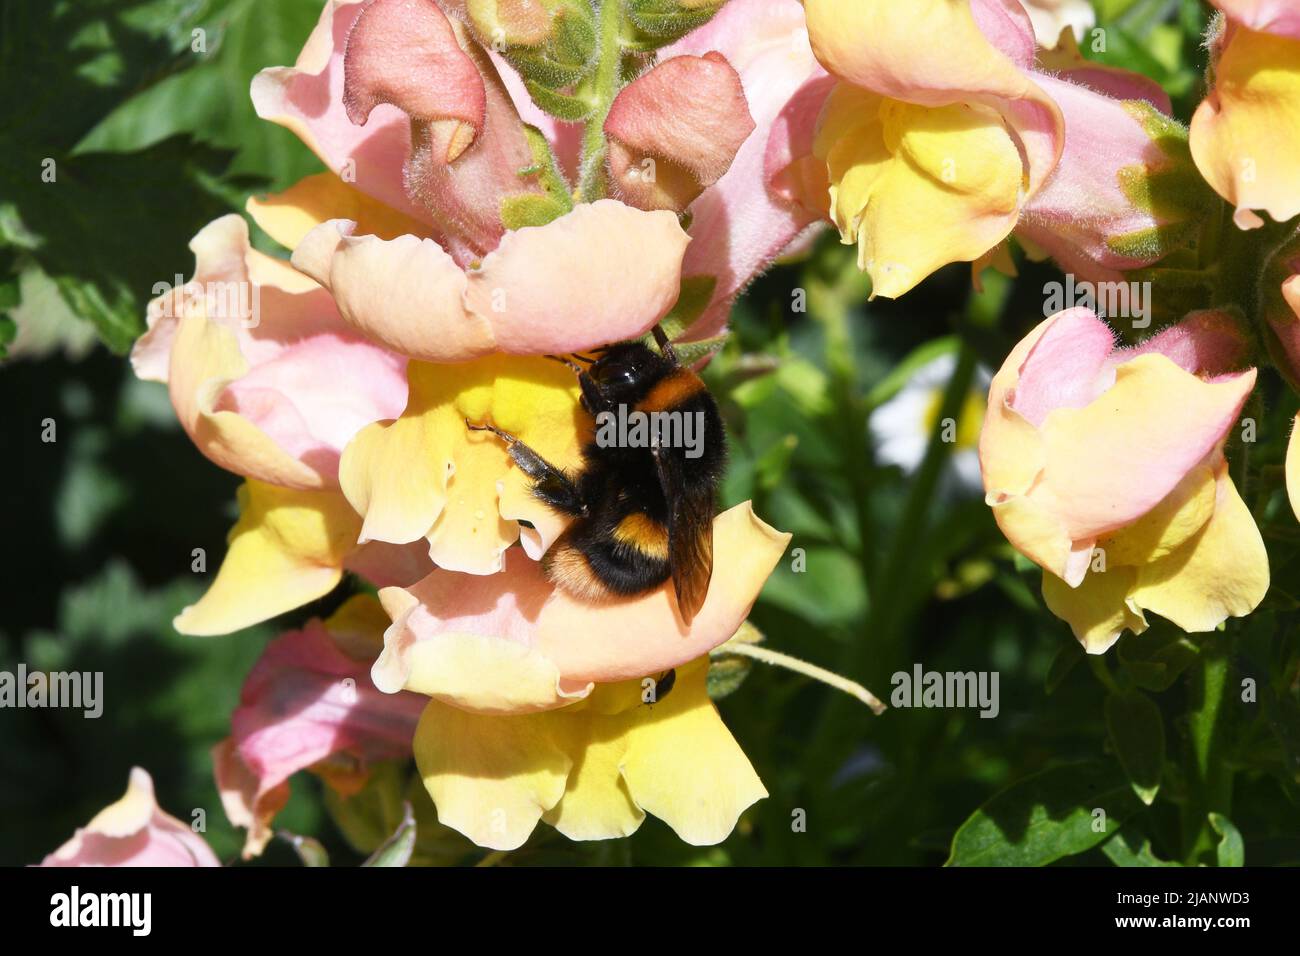 Une frontière lumineuse et colorée de fleurs avec des antirrhinums dorés pollinisés par une petite abeille. Dans un jardin du Somerset au début de l'été. Banque D'Images